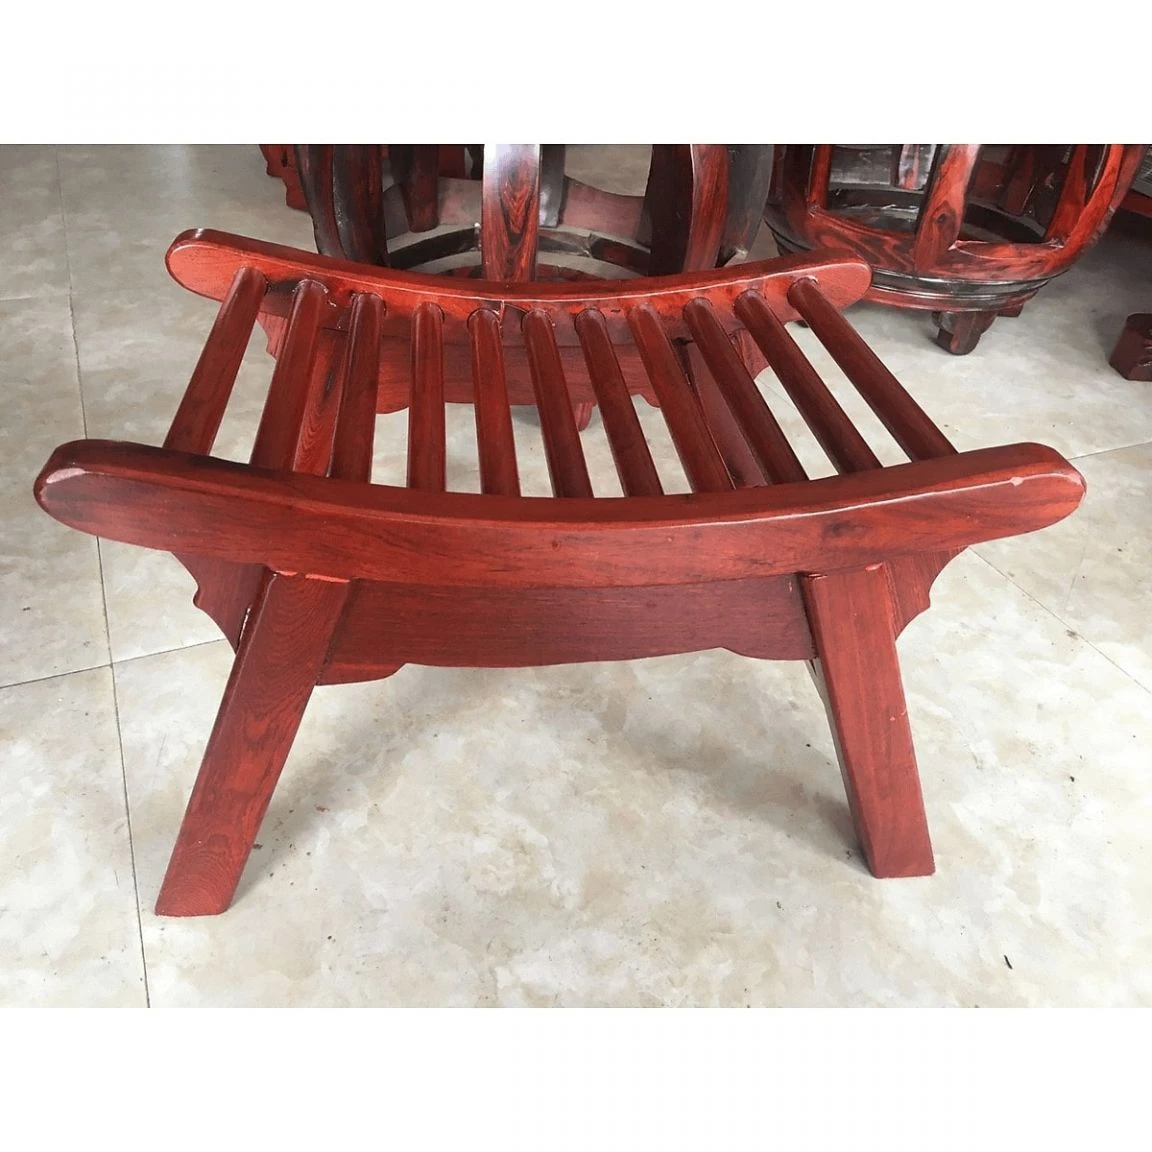 Ghế gỗ thư giãn làm từ chất liệu gỗ hương